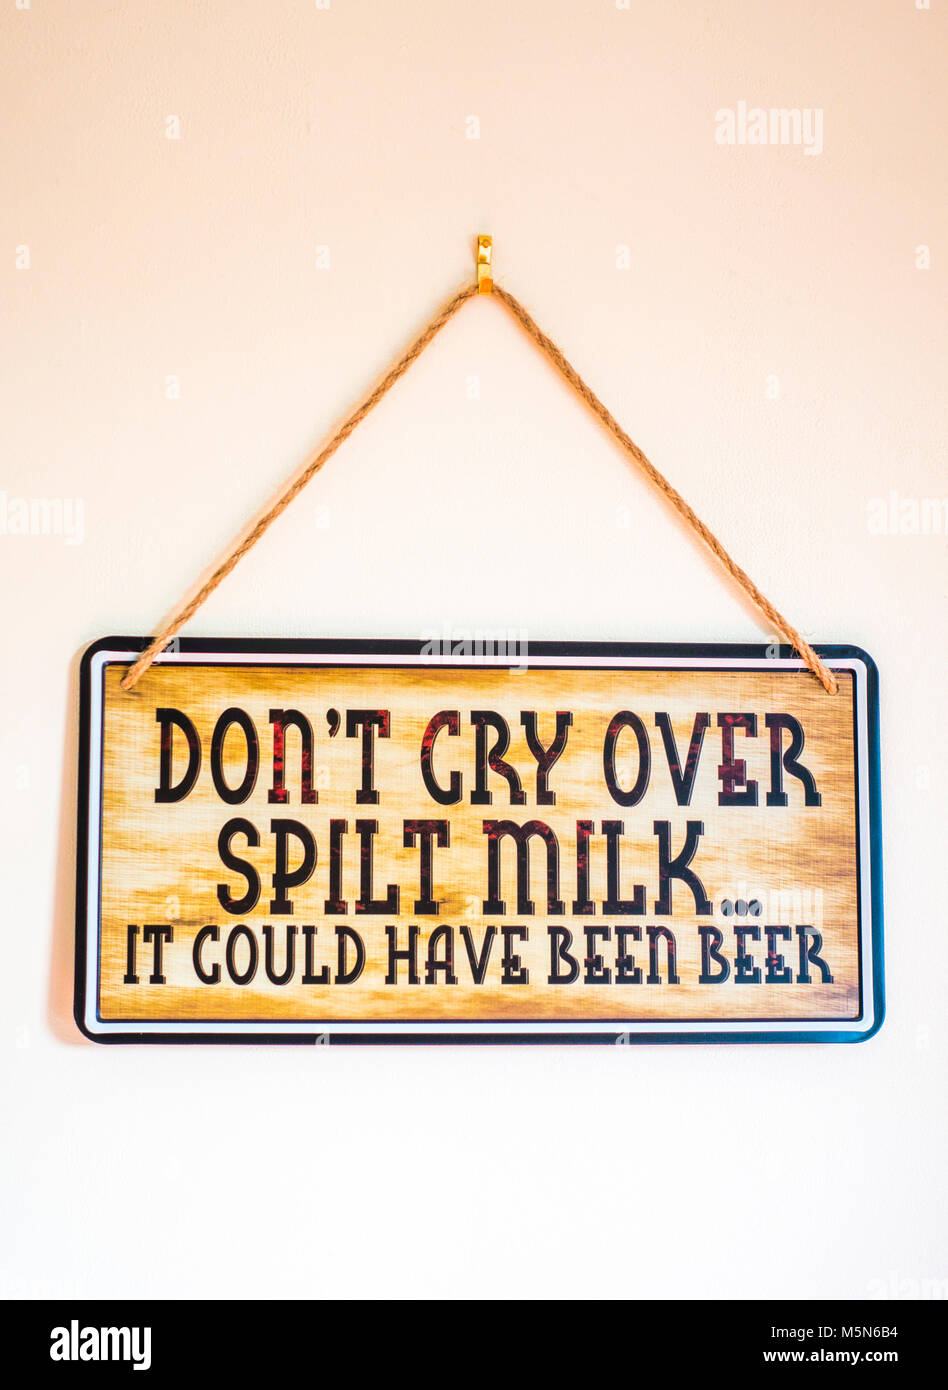 Zeichen hängen durch Zeichenfolge an einer Innenwand, die mit dem witzigen Slogan: "Nicht über verschüttete Milch weinen... Es könnte Bier wurden". England, UK. Stockfoto